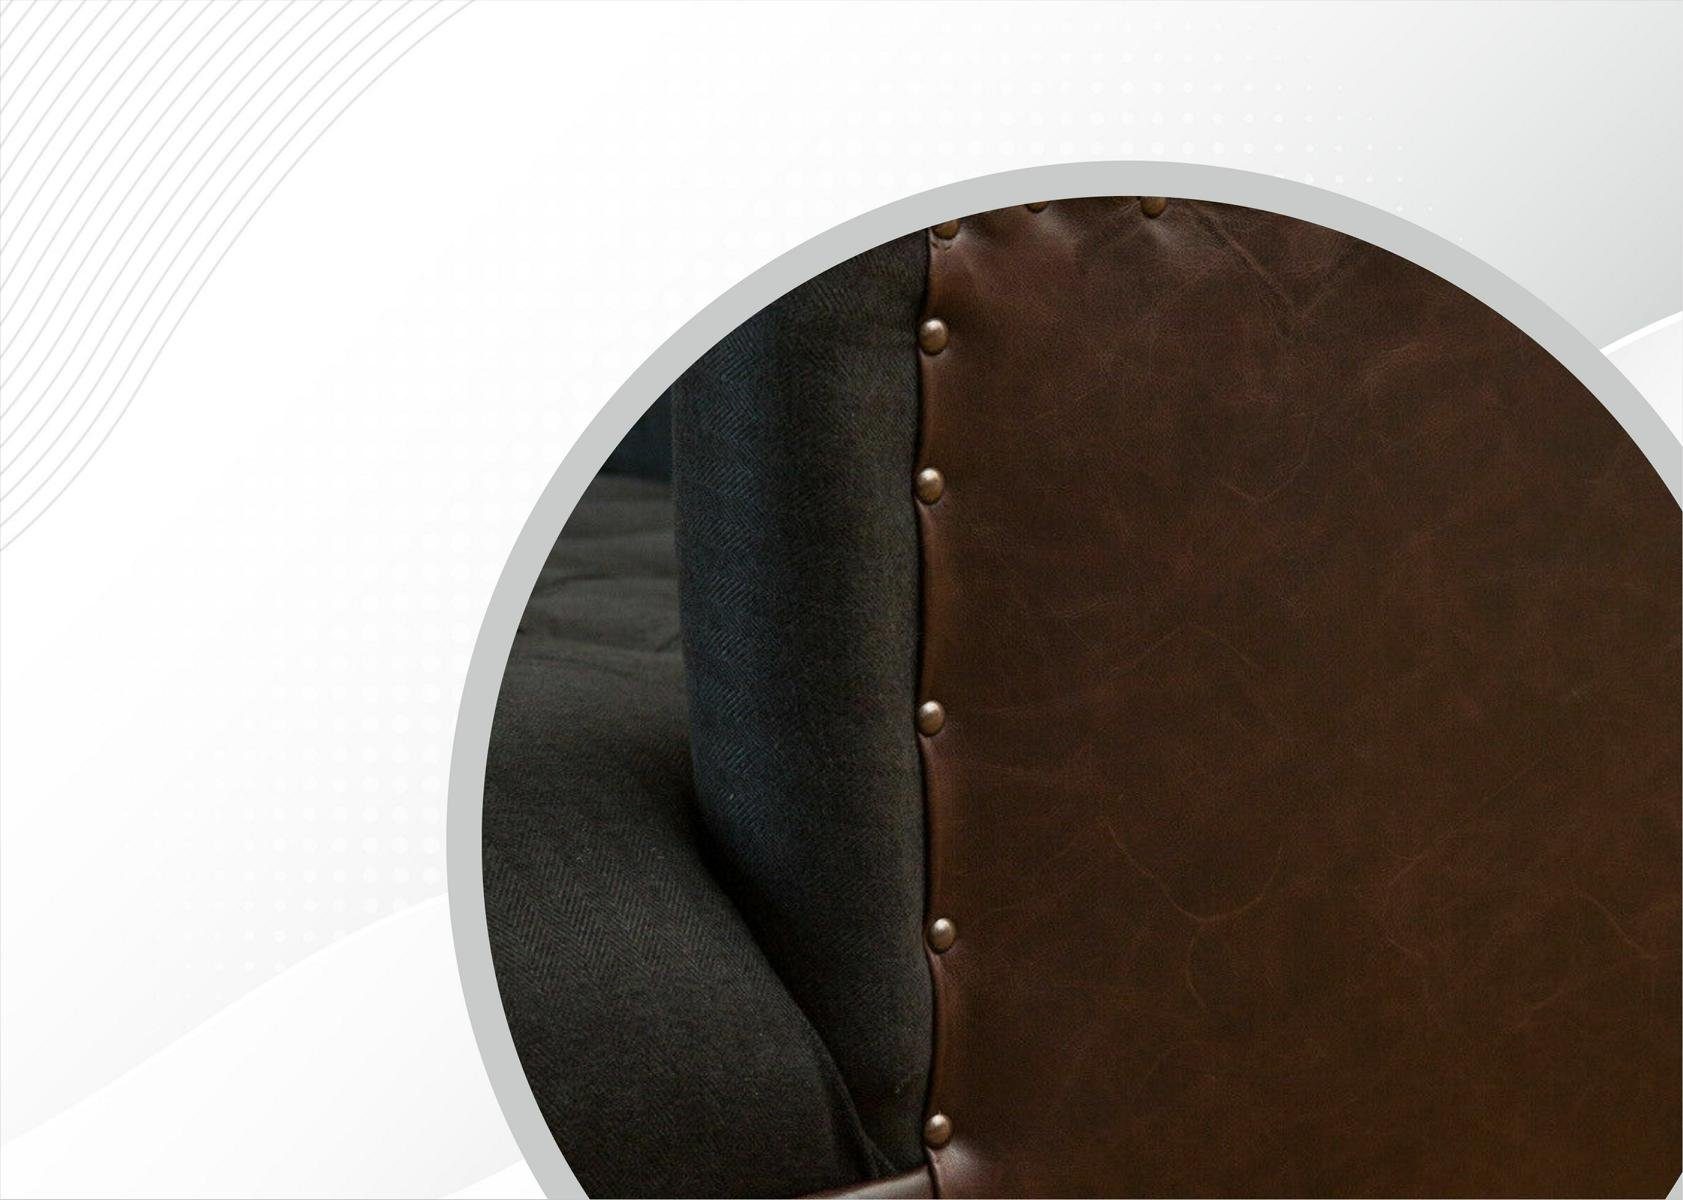 Couch JVmoebel Sitzer Chesterfield Sofa Knöpfen. mit Rückenlehne cm, 190 3 Chesterfield-Sofa, Die Design